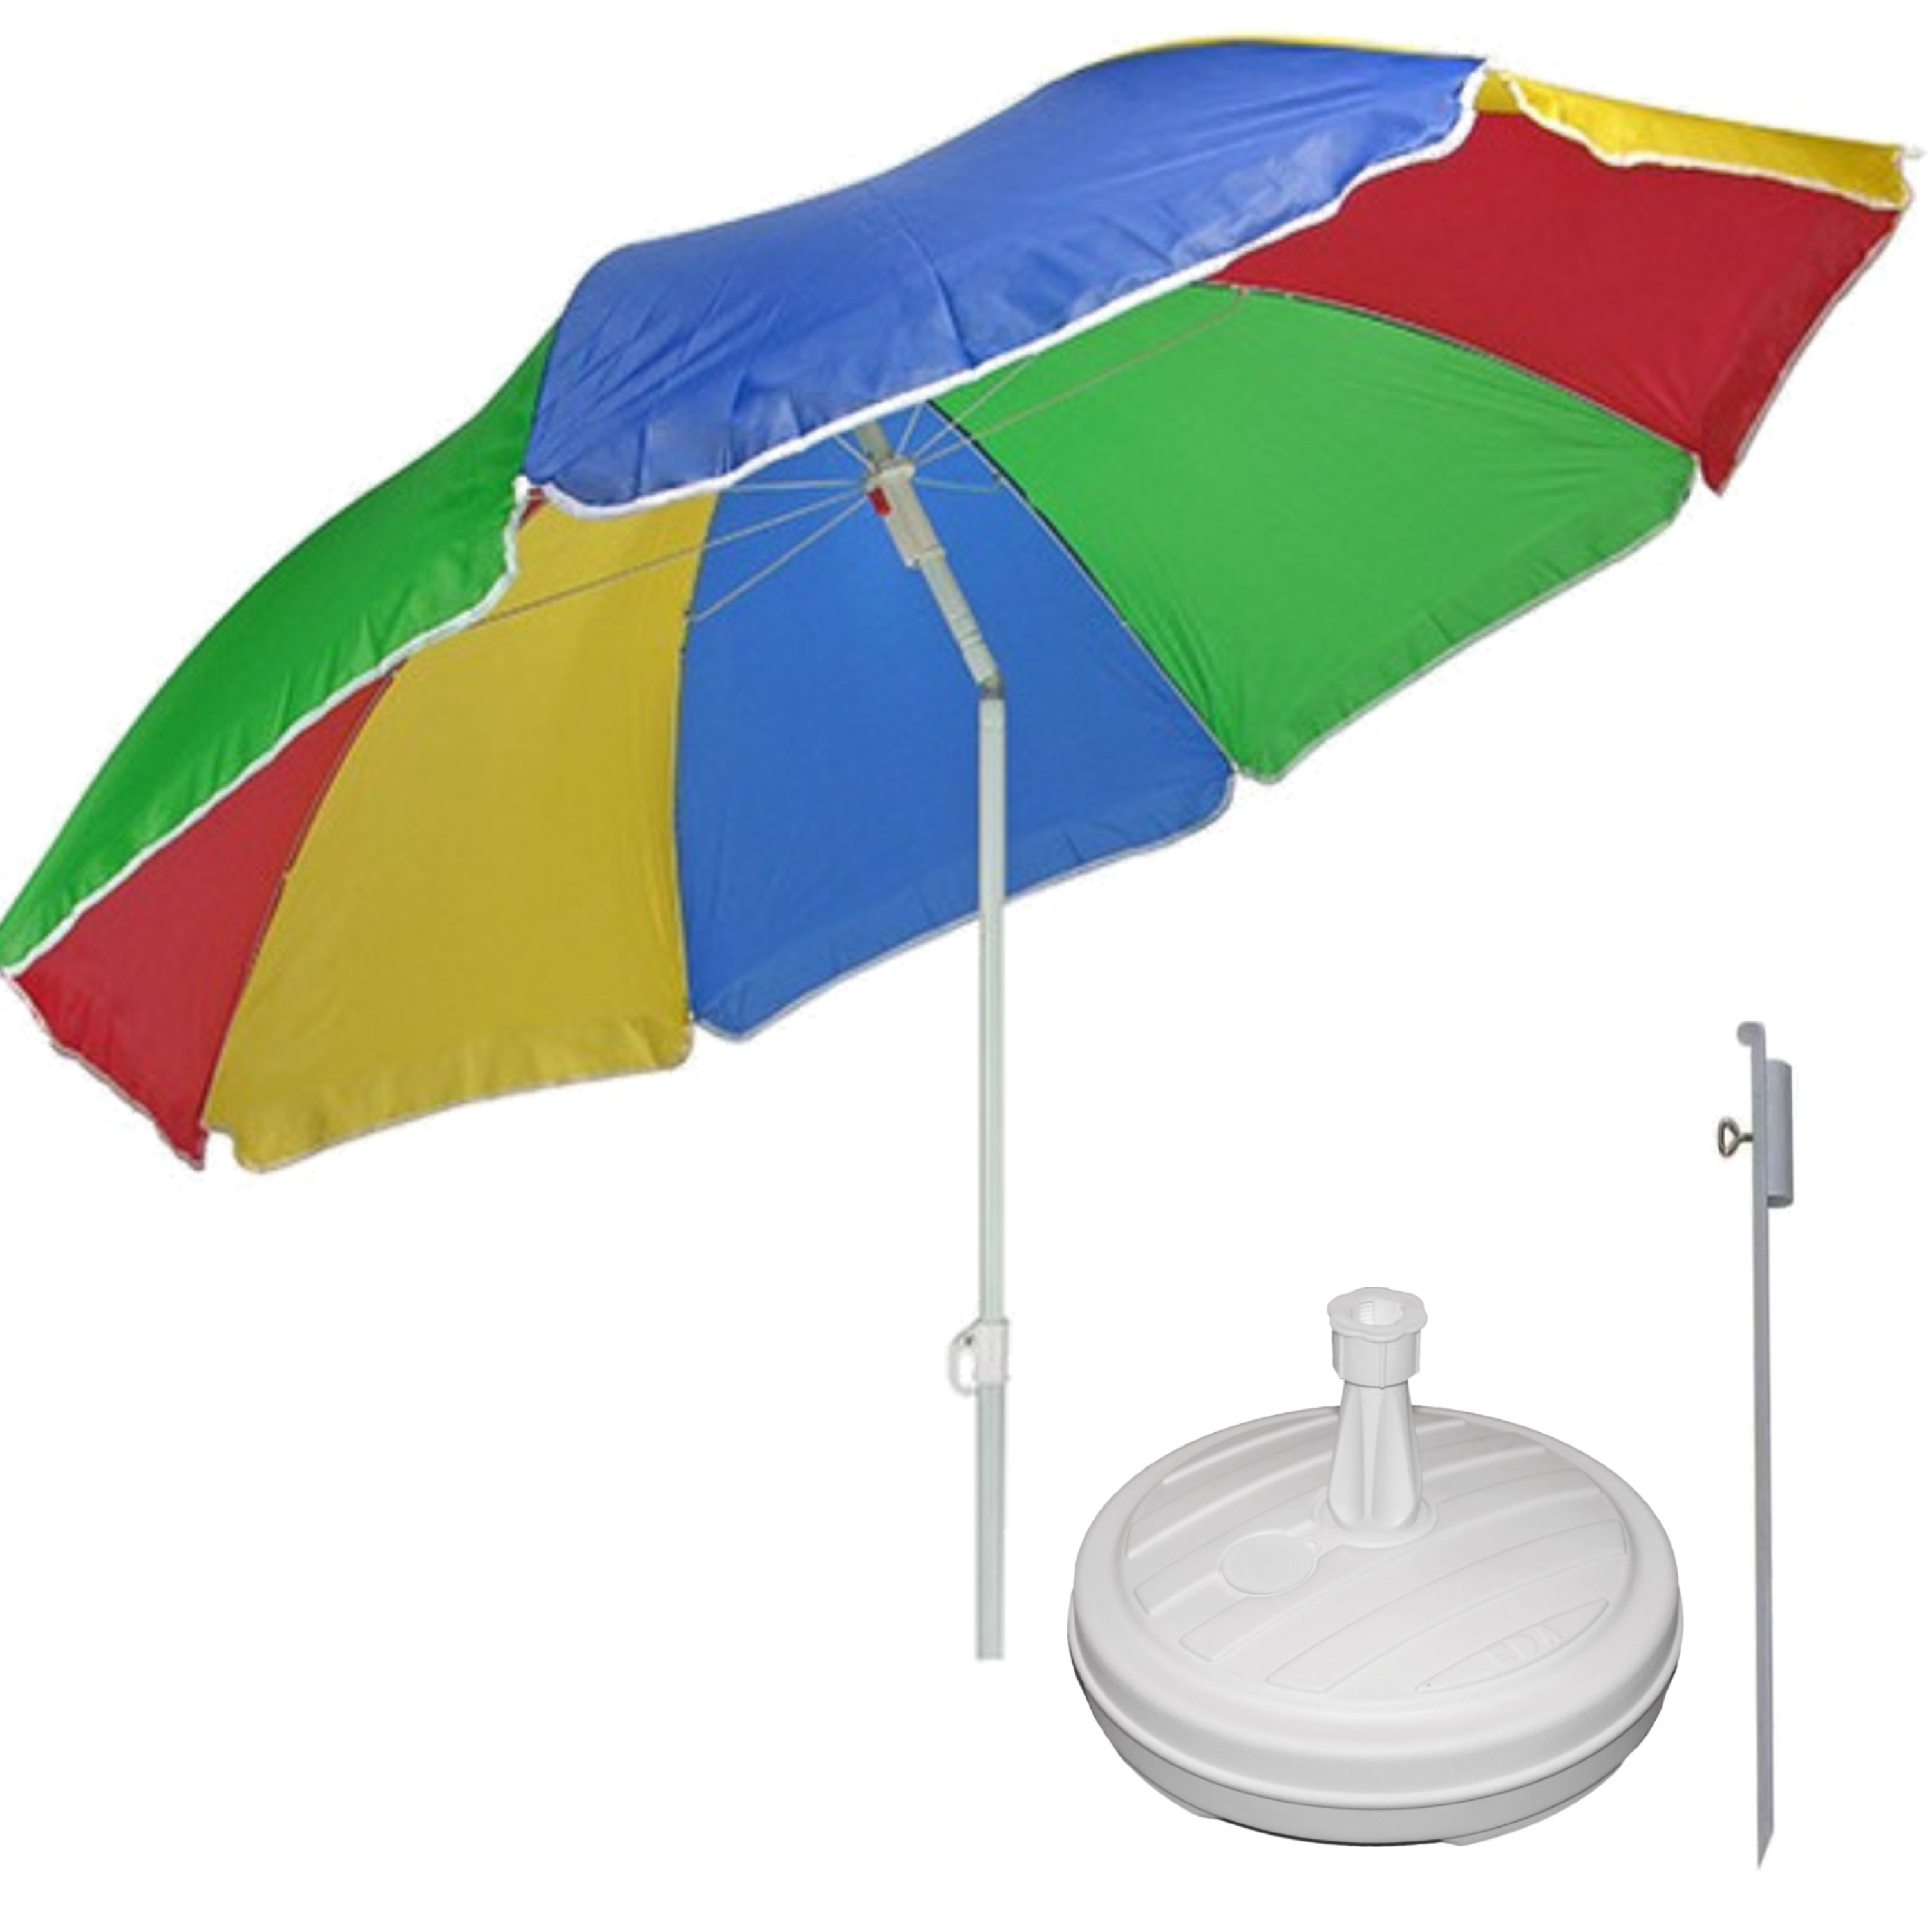 Merkloos Regenboog gekleurde tuin/strand parasol 180 cm met grondharing van 50 cm -